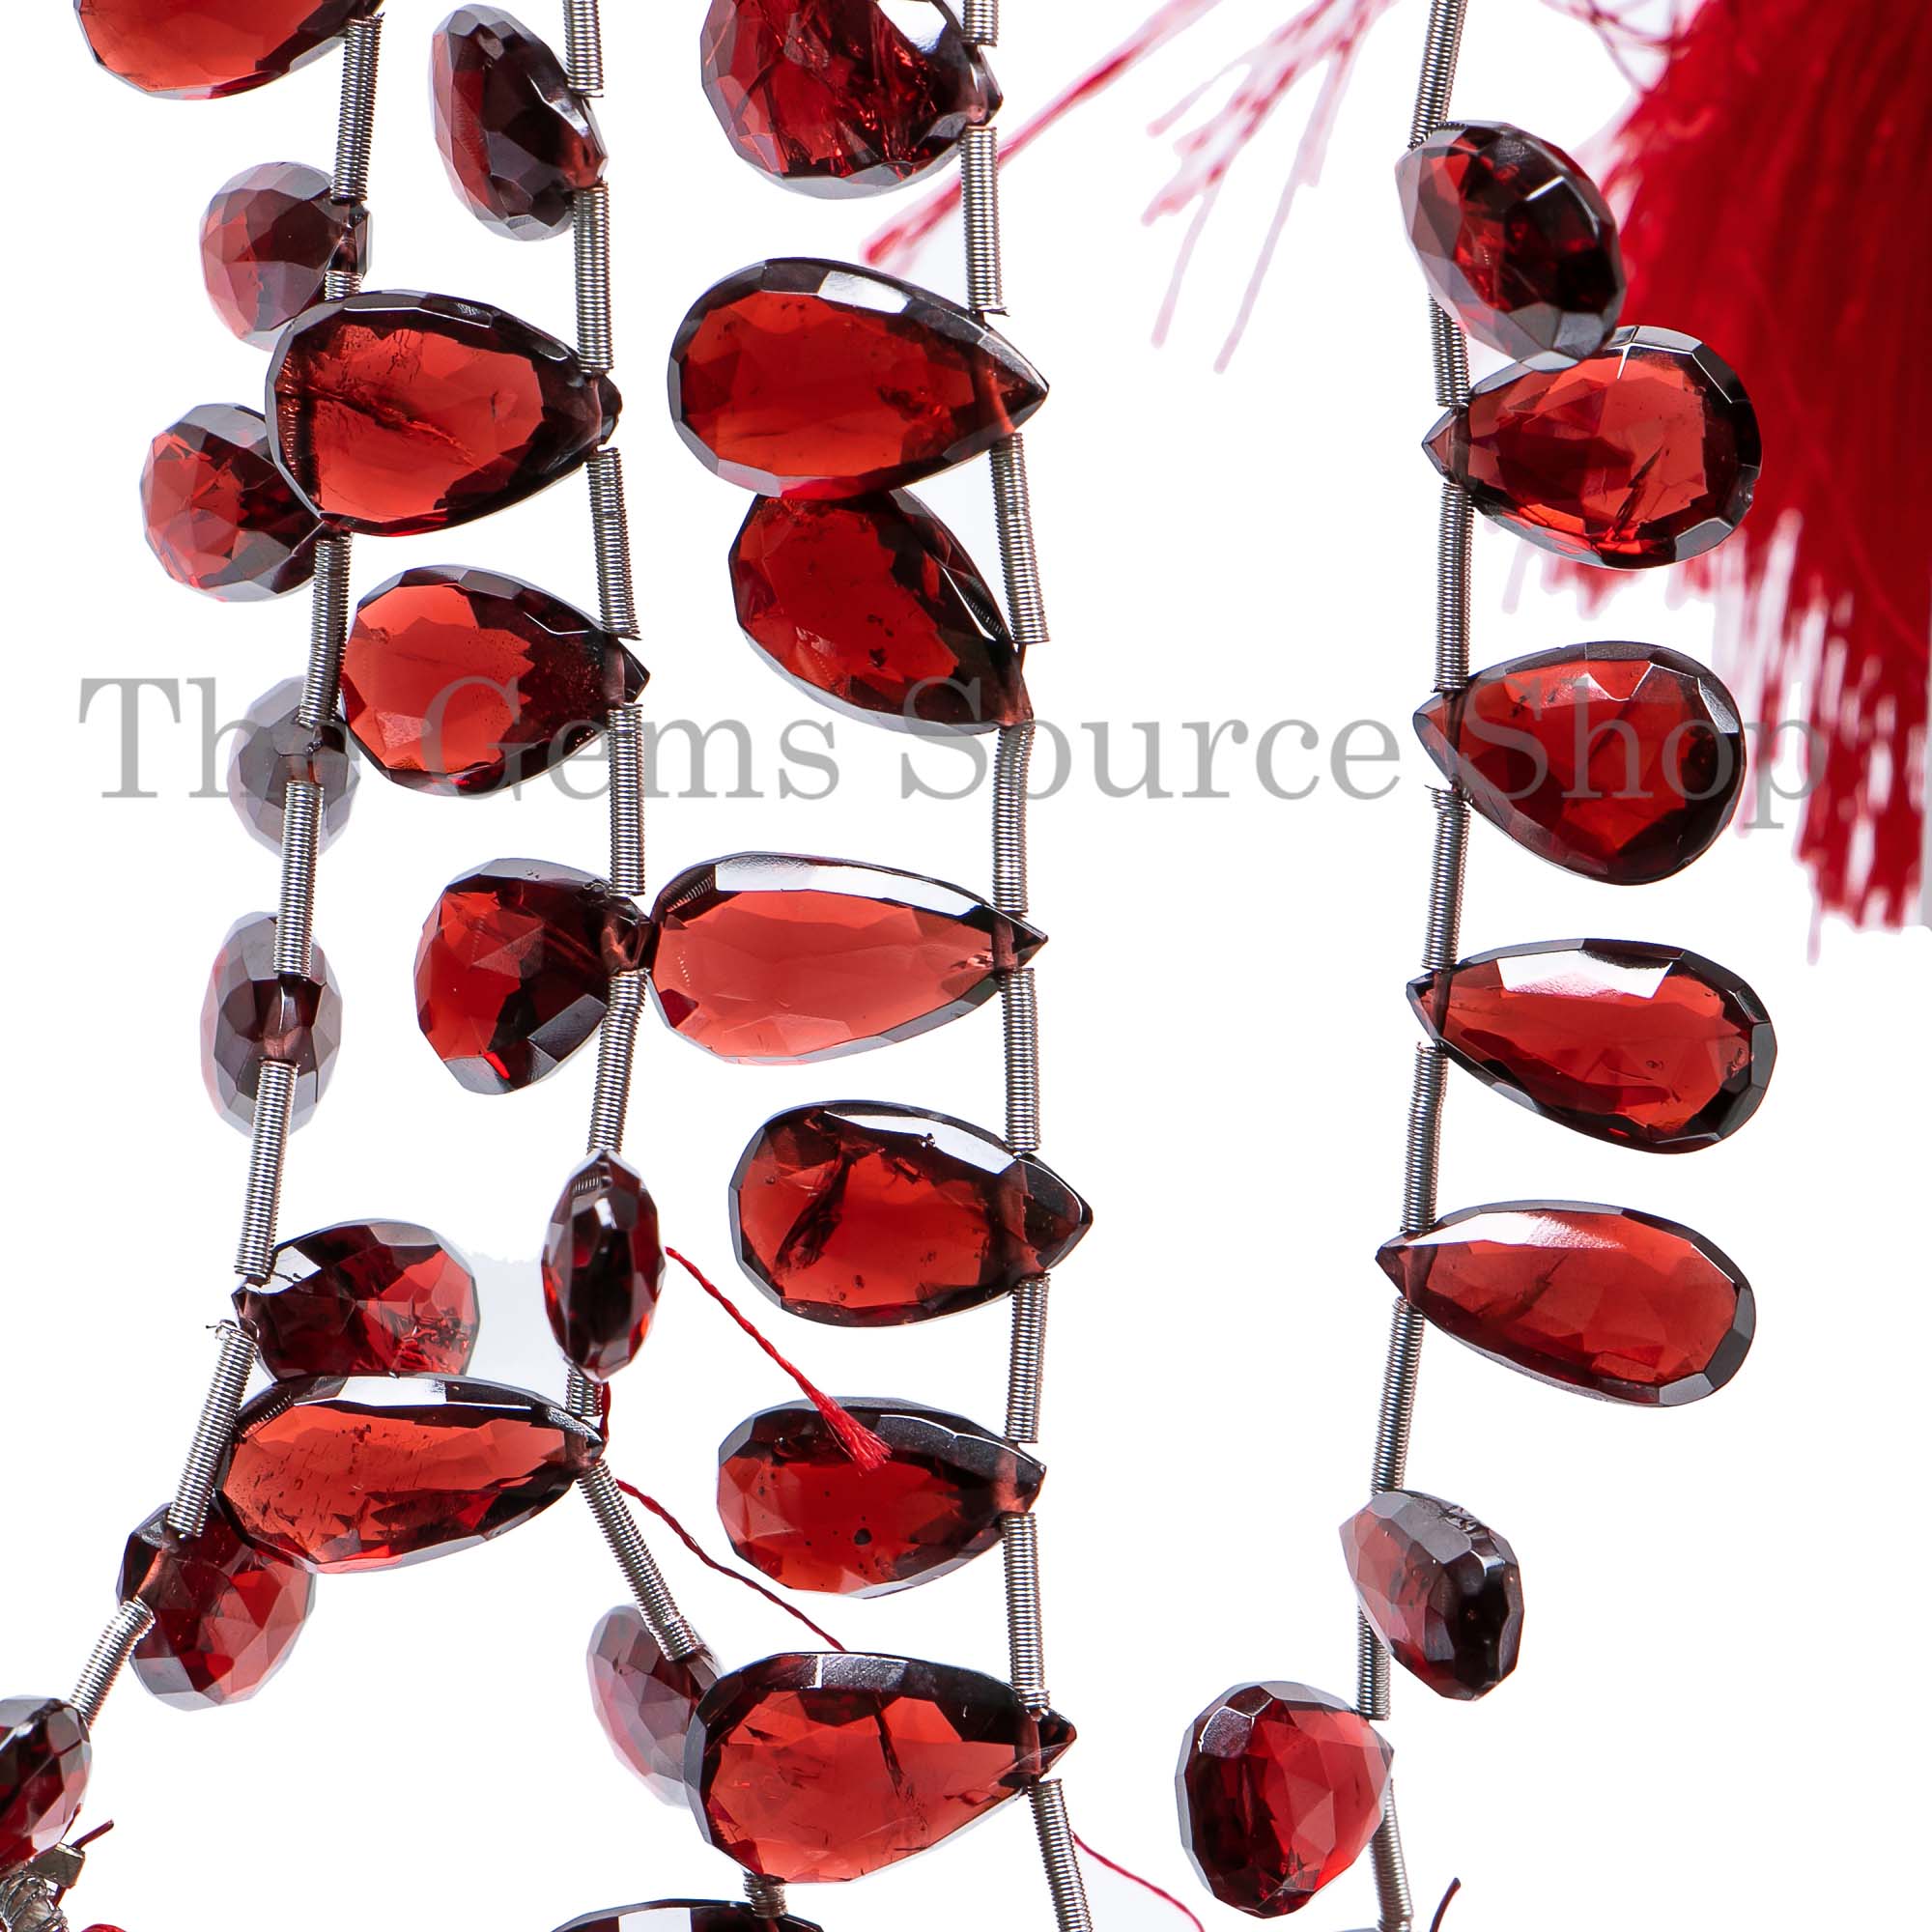 Mozambique Garnet Beads, Garnet Faceted Beads, Garnet Pear Shape Beads, Garnet Gemstone